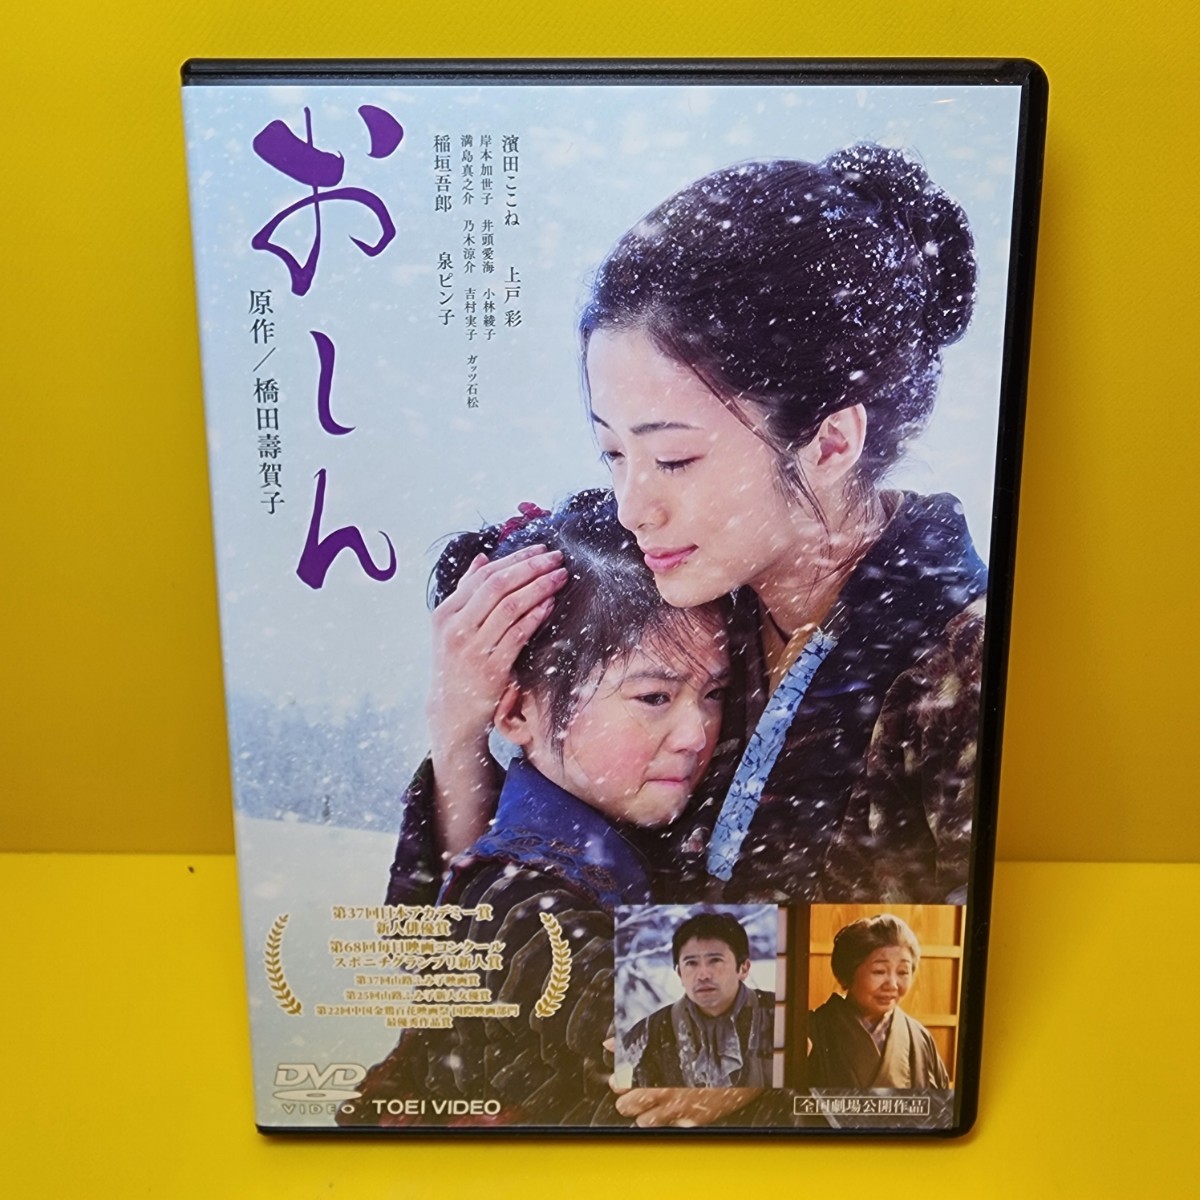 「おしん('13「おしん」製作委員会)」DVD濱田ここね / 上戸彩 / 冨樫森